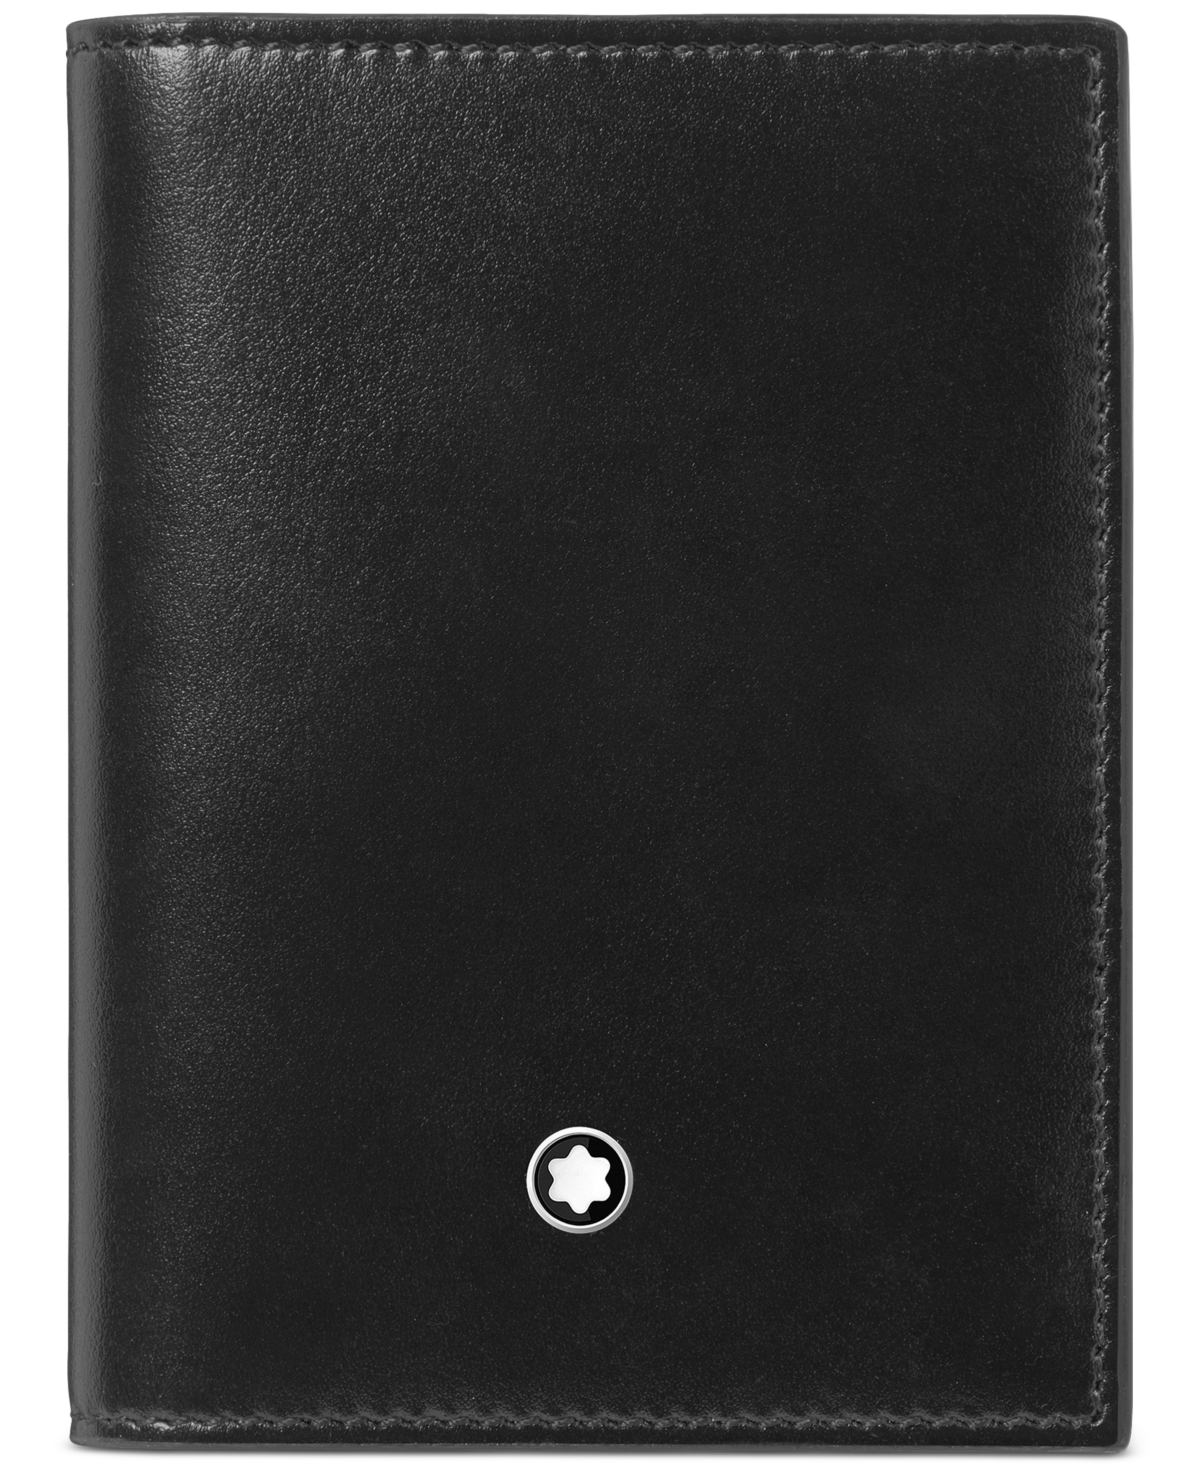 Meisterstuck Leather Card Holder - Black